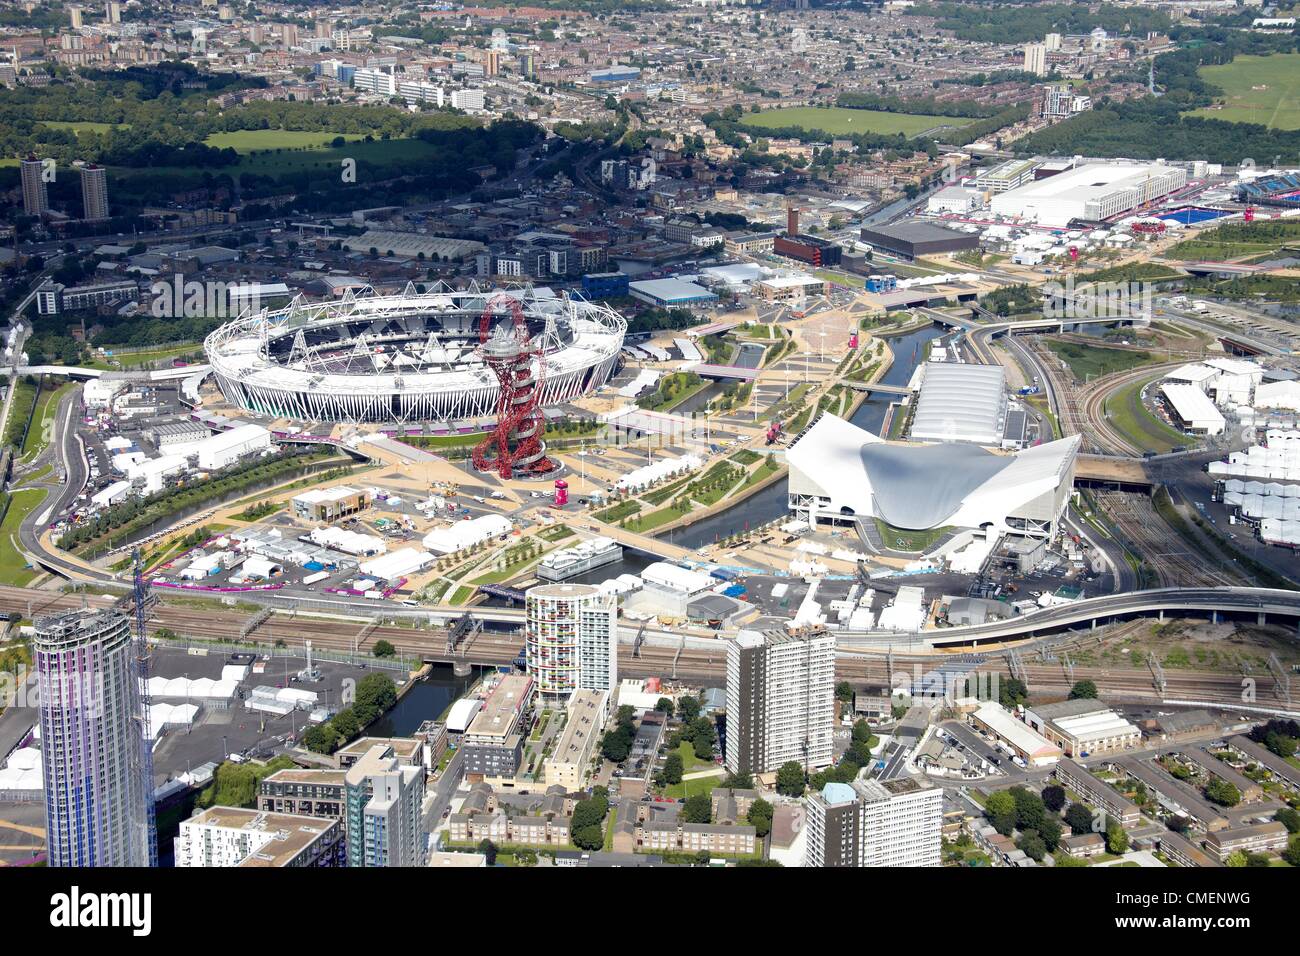 Photographie aérienne au nord-ouest du Stade Olympique et de l'orbite dans le parc olympique, Londres 2012 site olympique de Stratford, London E20 UK Banque D'Images